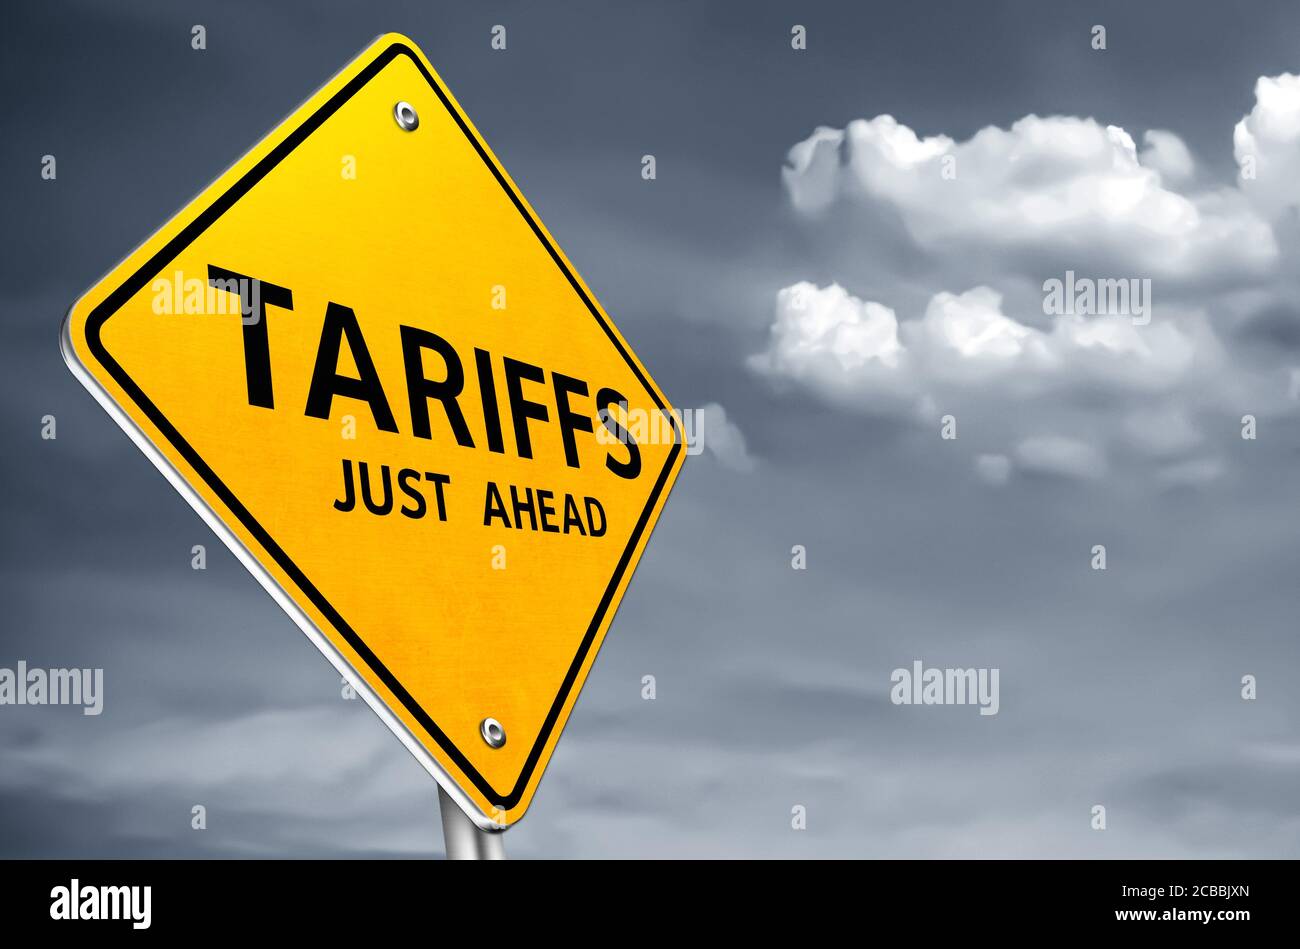 Le tariffe appena avanti - segnale stradale illustrazione di avvertimento Foto Stock